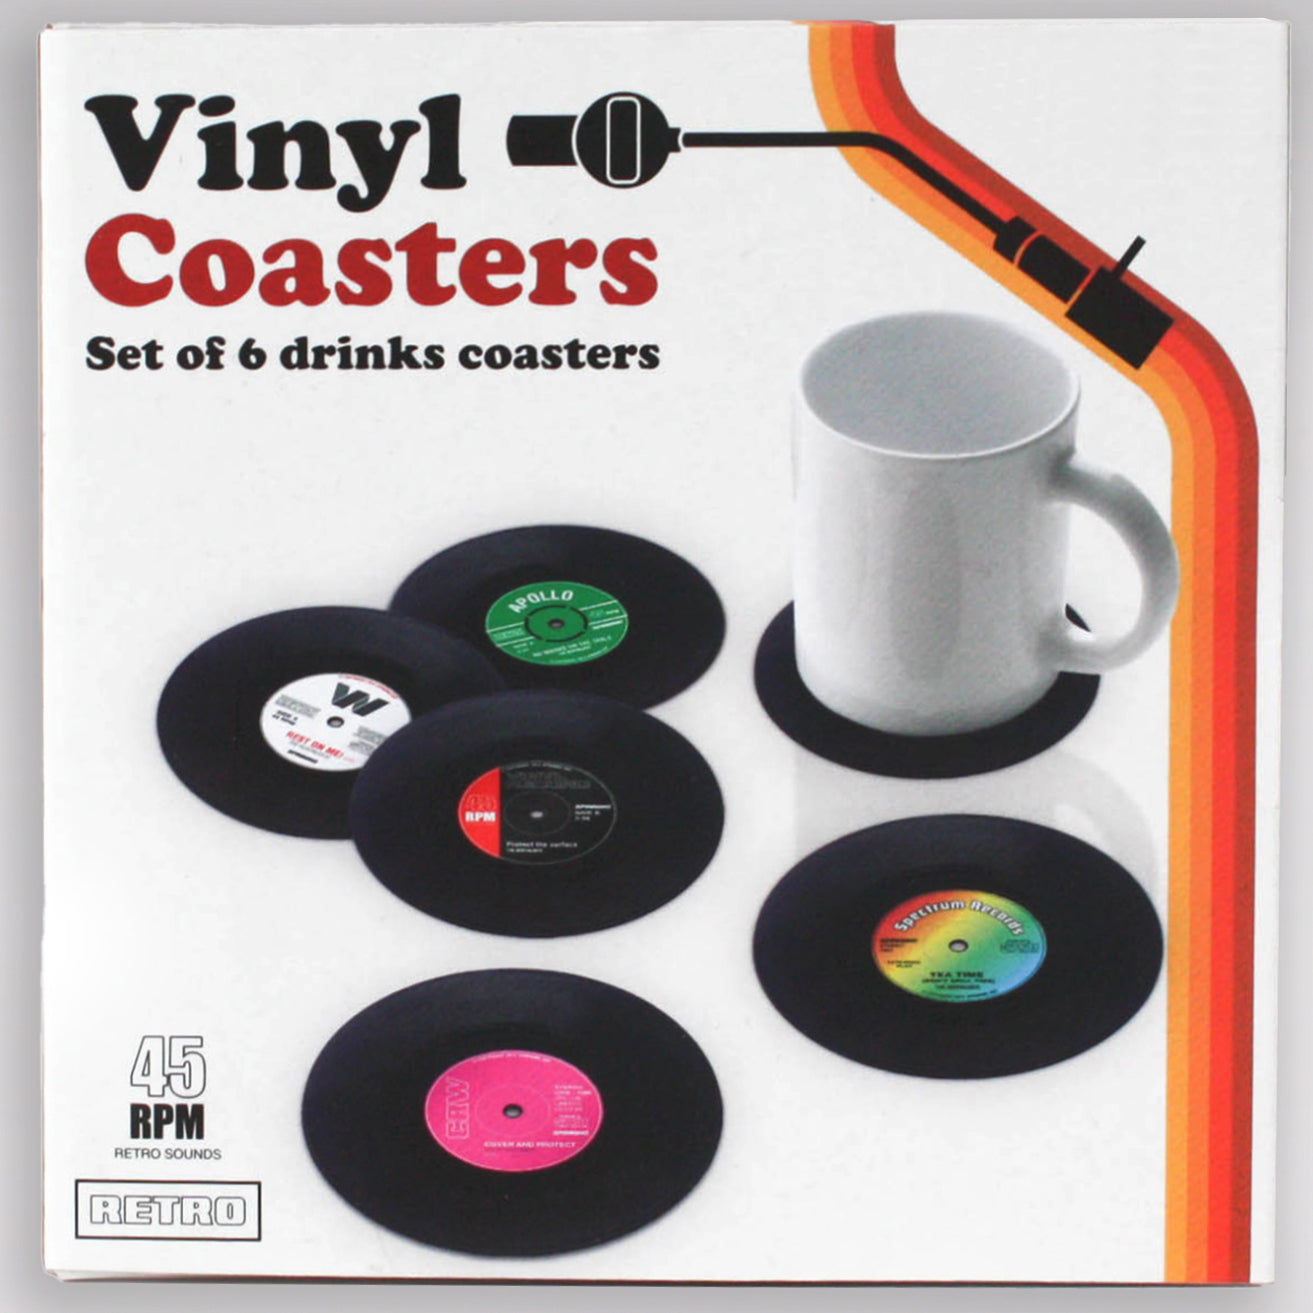 Vinyl Record Style Coasters